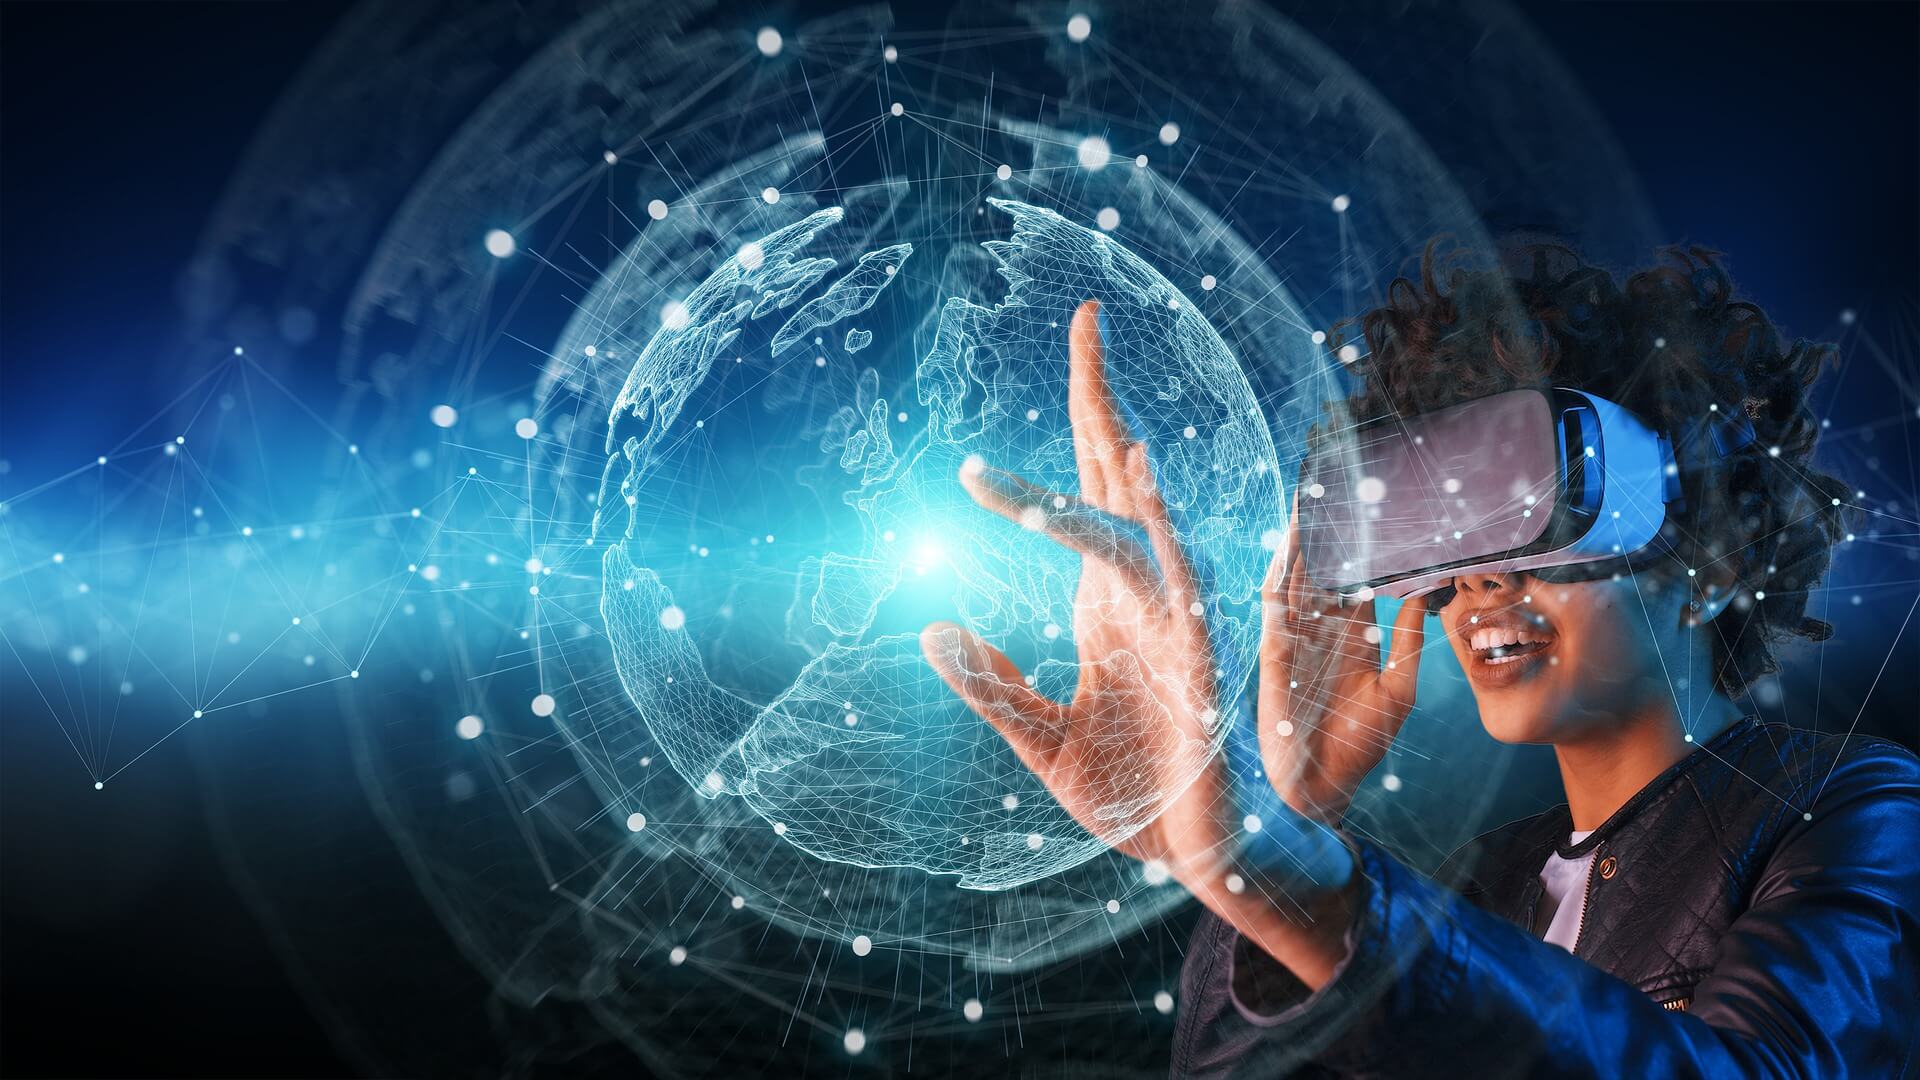 图片展示了一位戴着虚拟现实头盔的人，正用手触摸着面前虚拟的三维地球仪，表情专注，科技感十足。